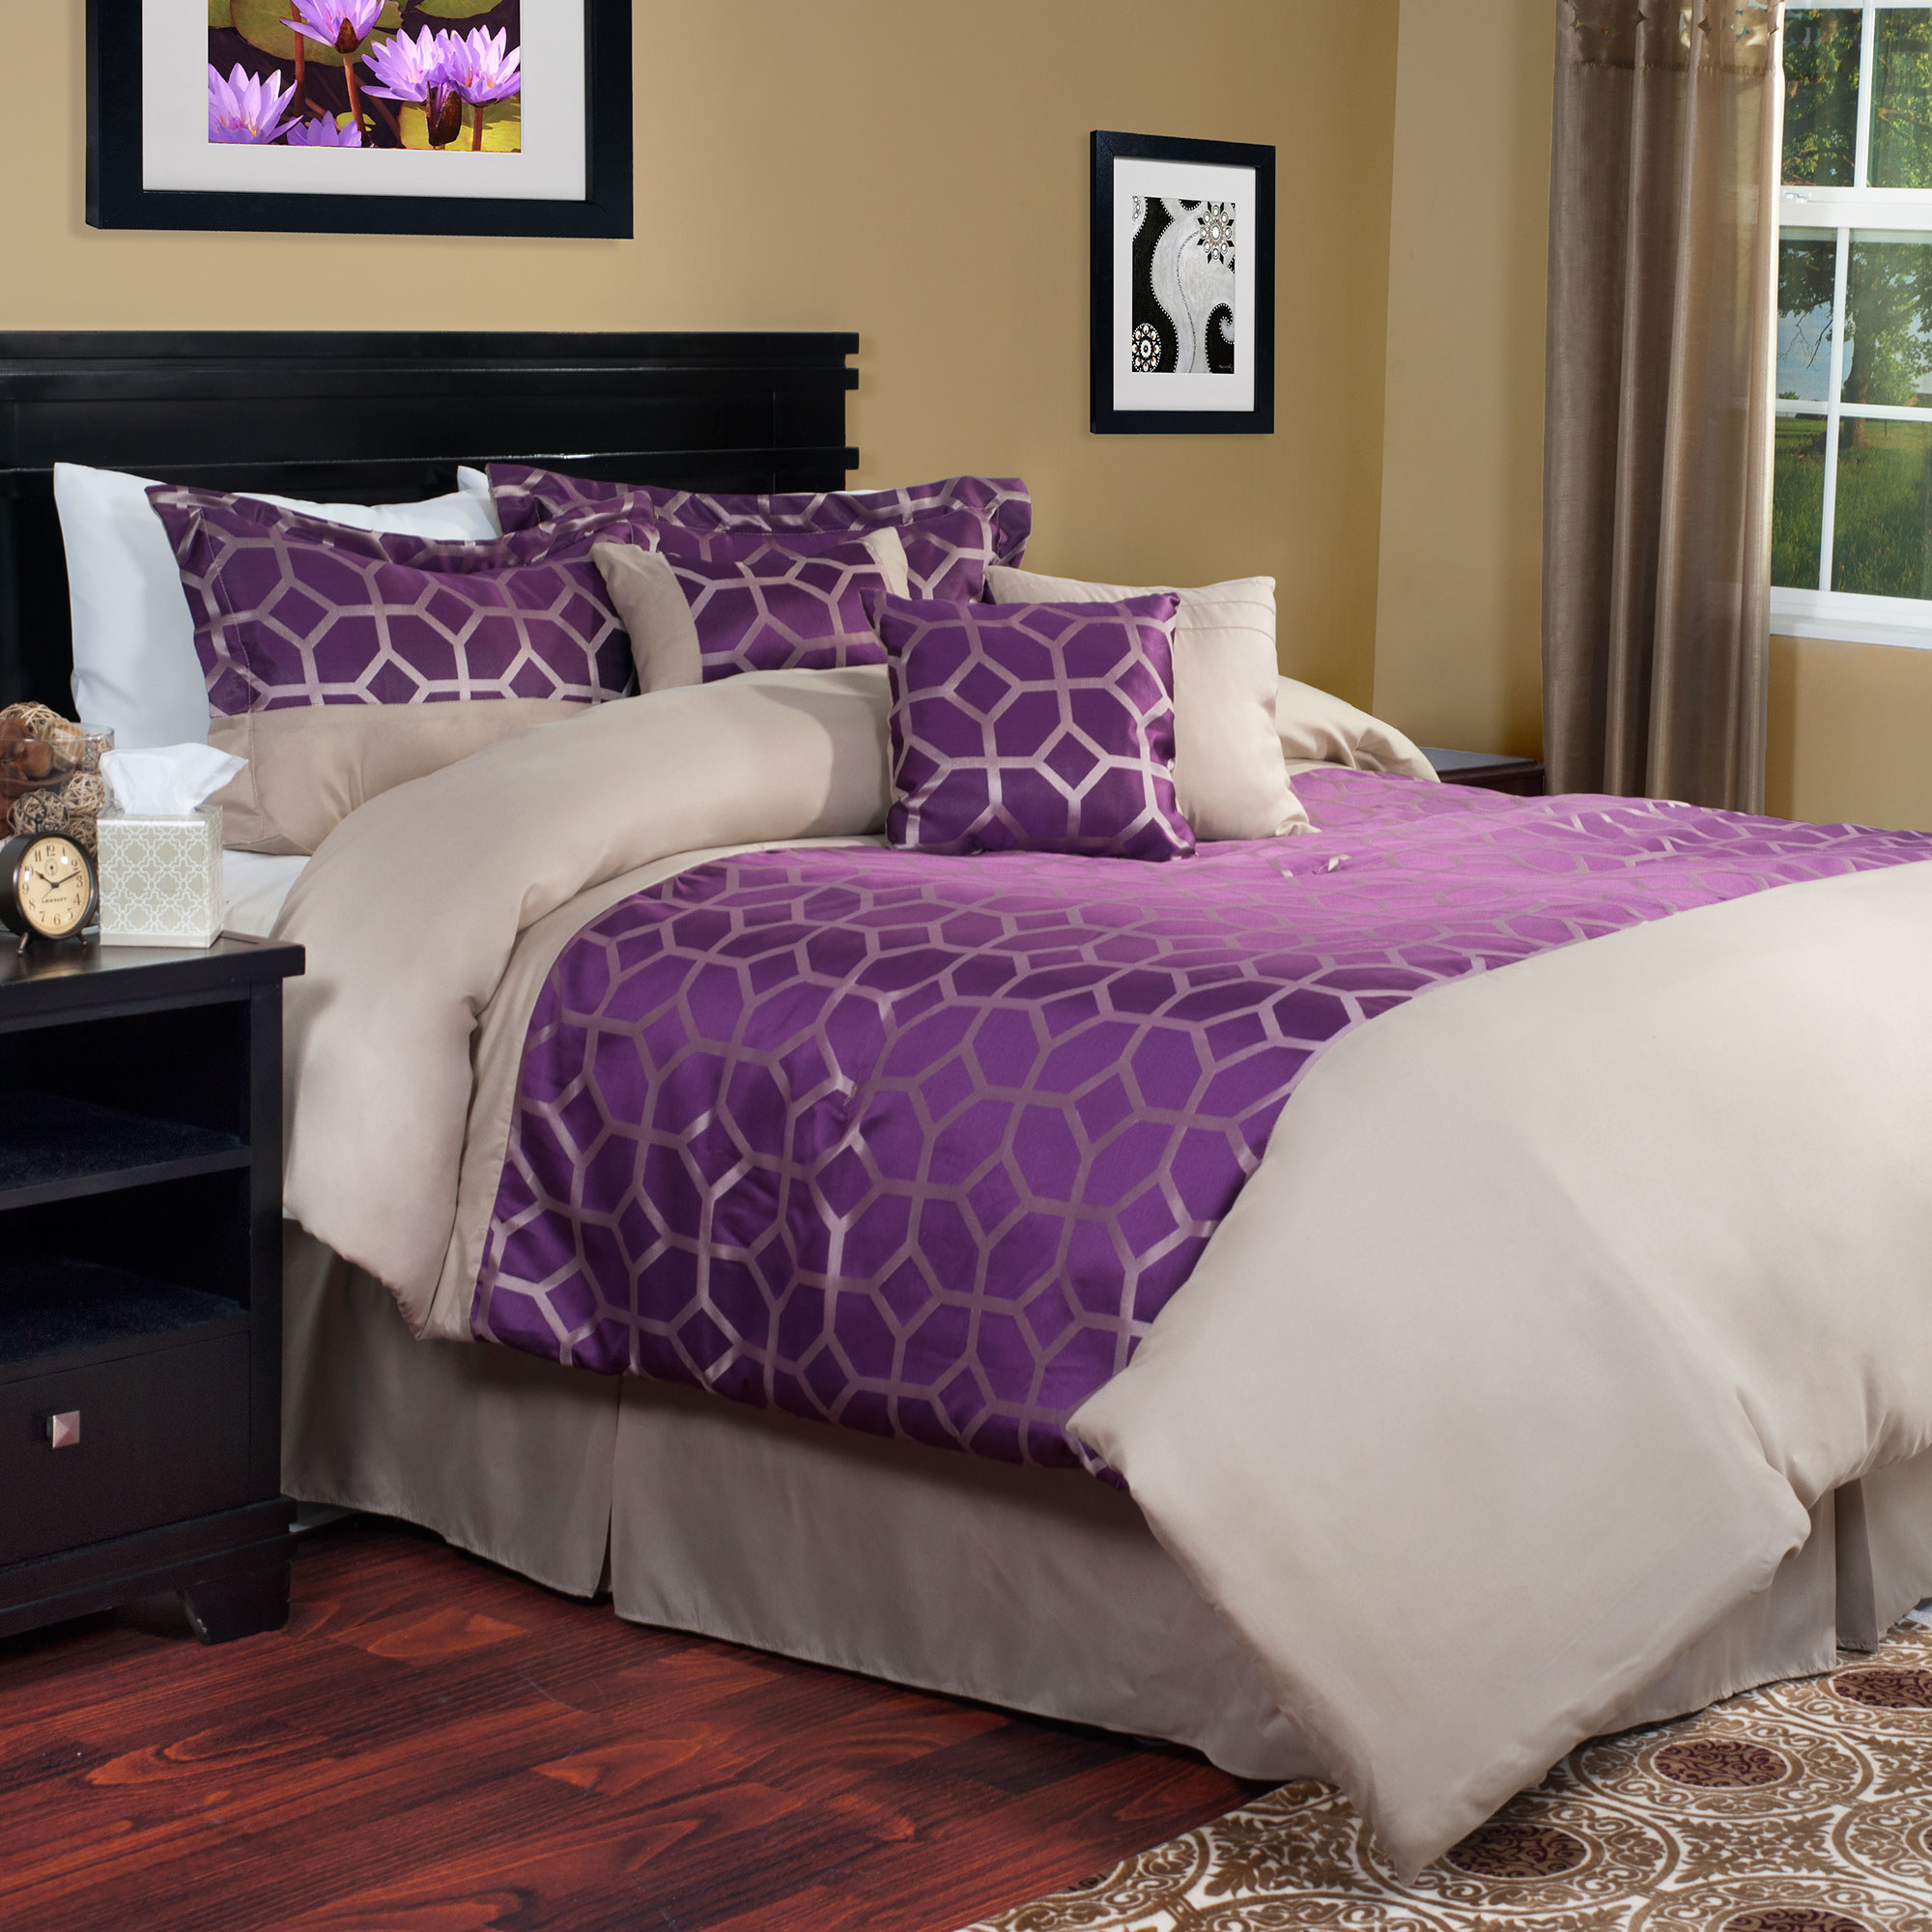 Ариа хоум. Спальня в сливовом цвете. Пурпурная кровать. Ария хоум покрывало. Ария хоум покрывало с подушками.